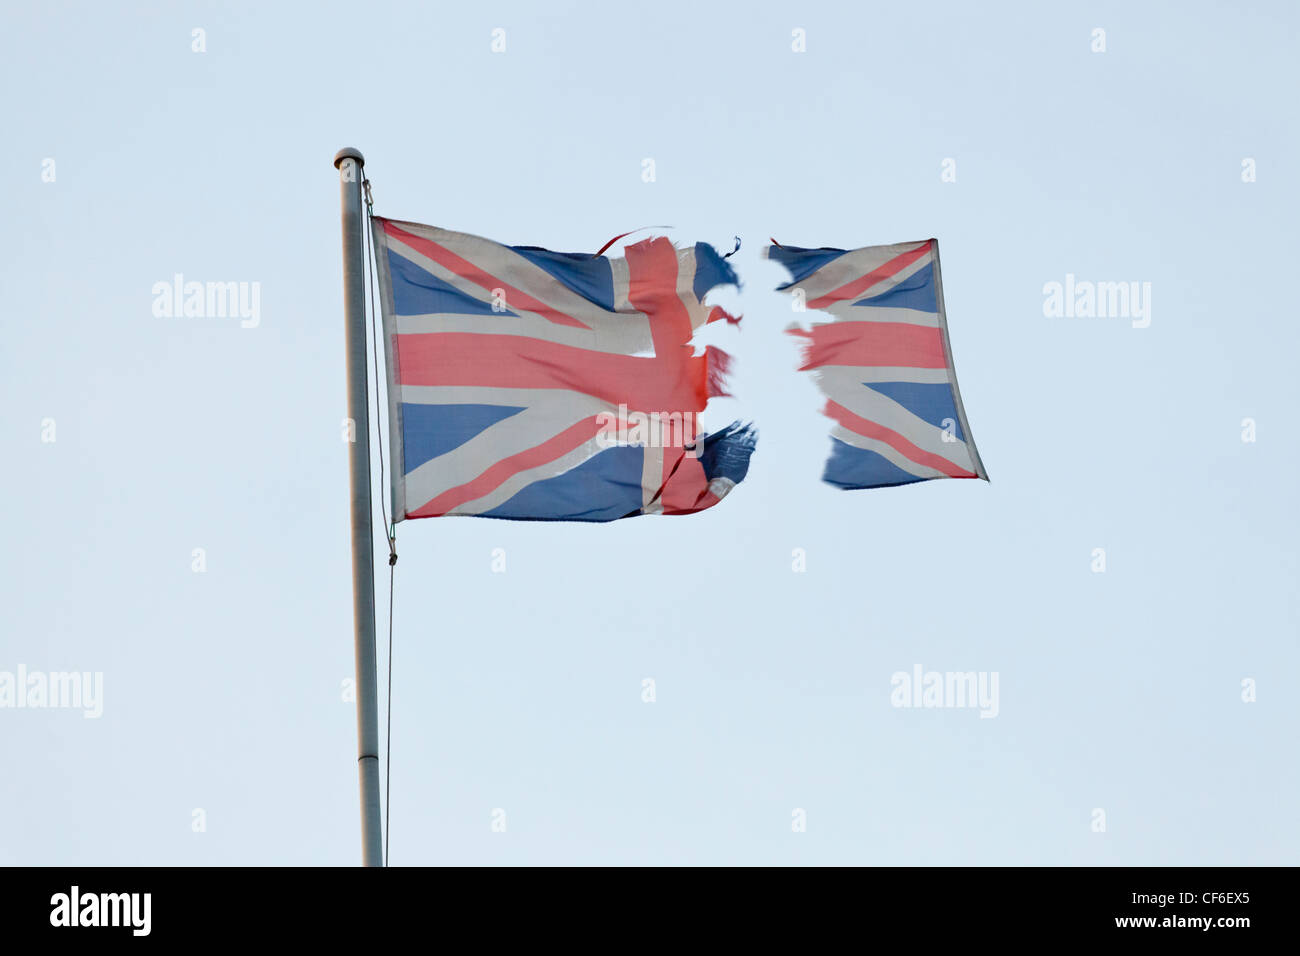 Raccord Union Jack déchiré. Le drapeau britannique a été déchiré en deux parties, une section s’éloignant, suggérant un concept d’indépendance, de décentralisation ou de Brexit Banque D'Images